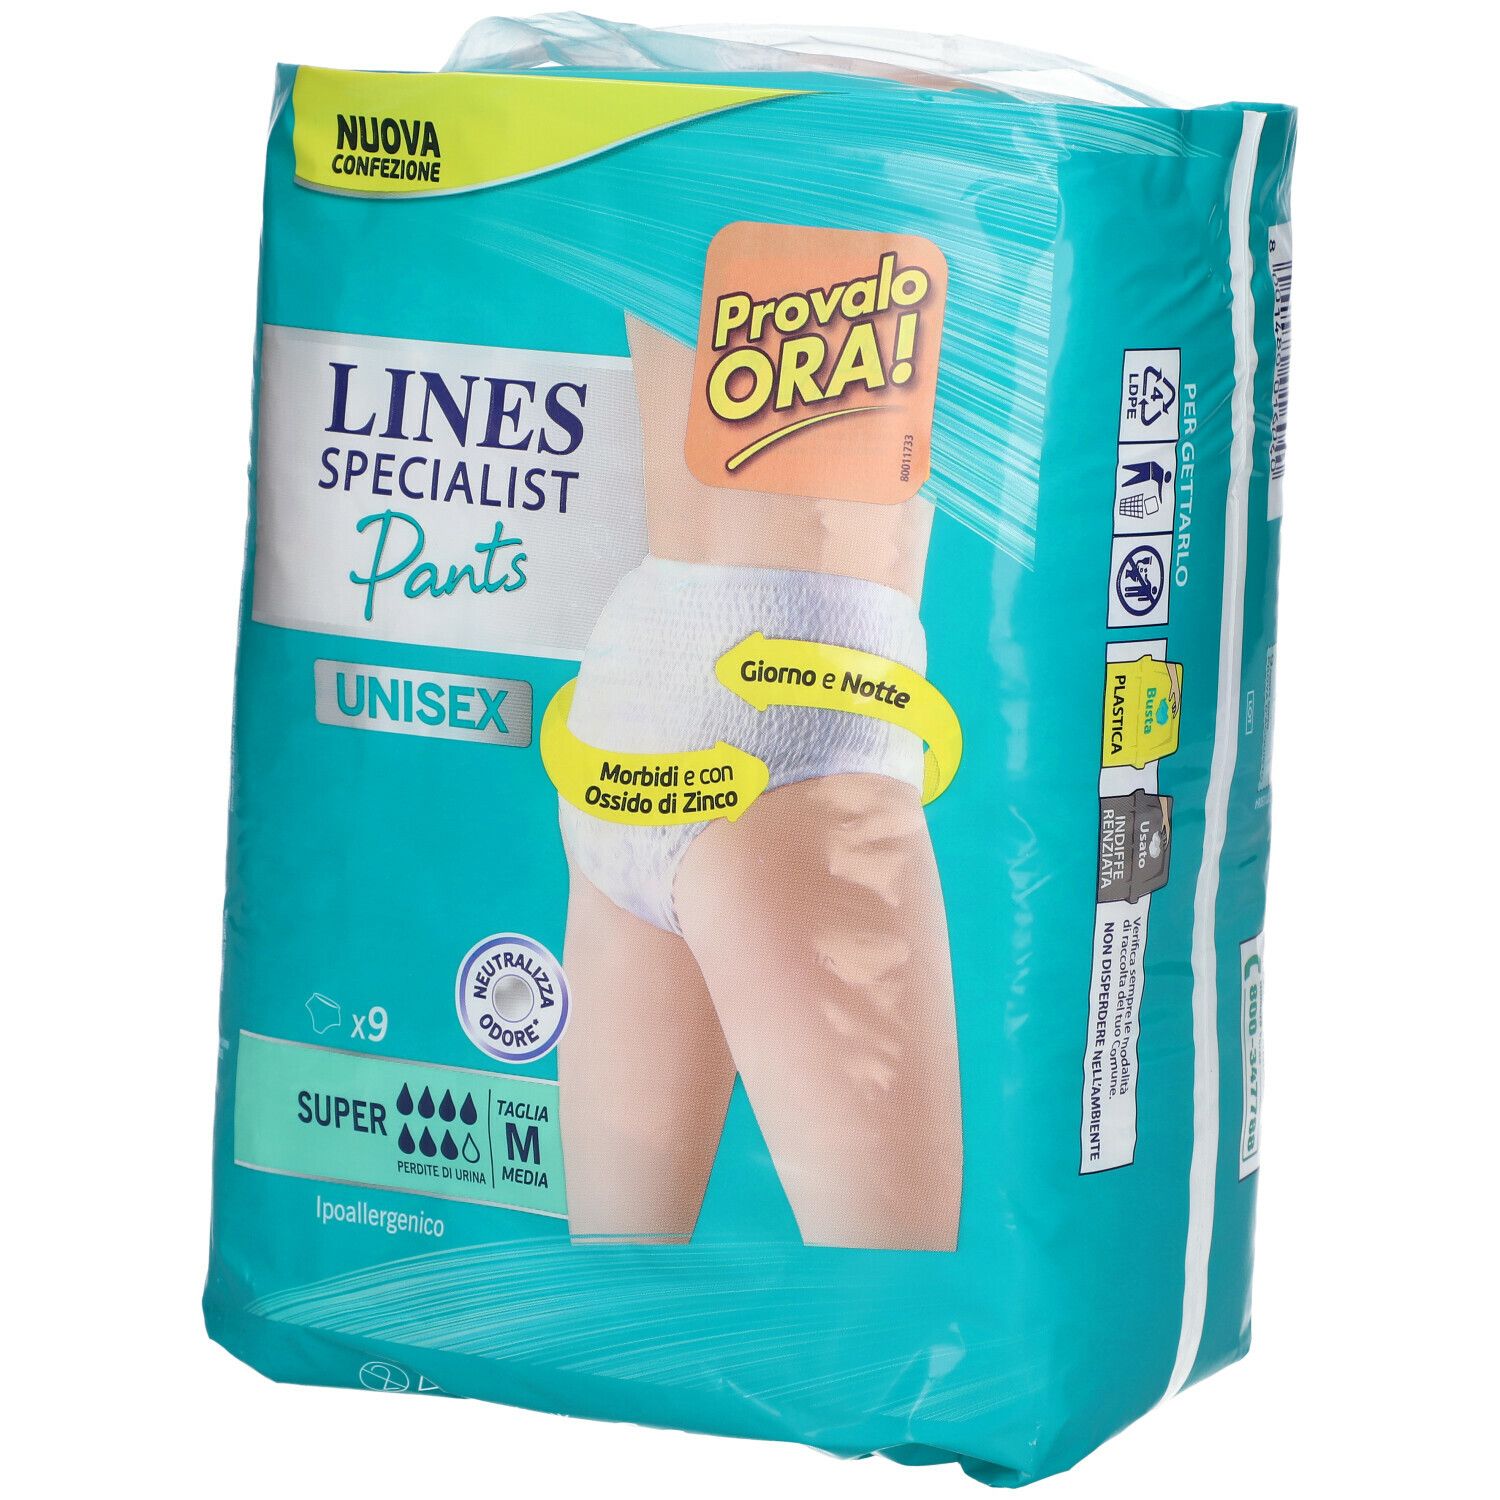 Lines Specialist Pants Unisex Super M